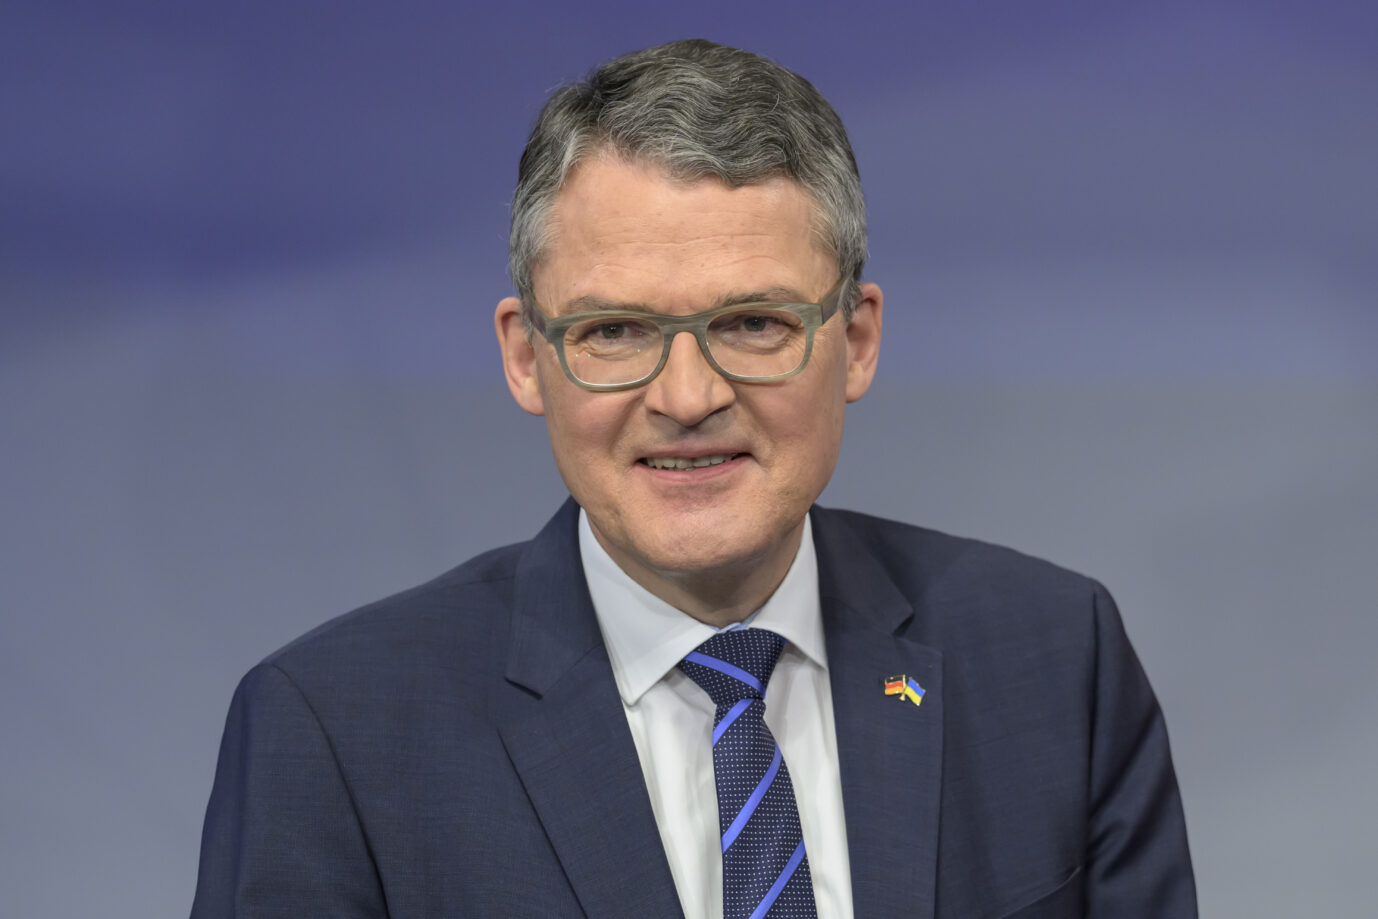 Der CDU-Bundestagsabgeordnete Roderich Kiesewetter will dafür sorgen, daß die Ukrainer in Deutschland in ihre Heimat zurückkehren. Dafür will er etwa das Bürgergeld für Ukrainer aussetzen.